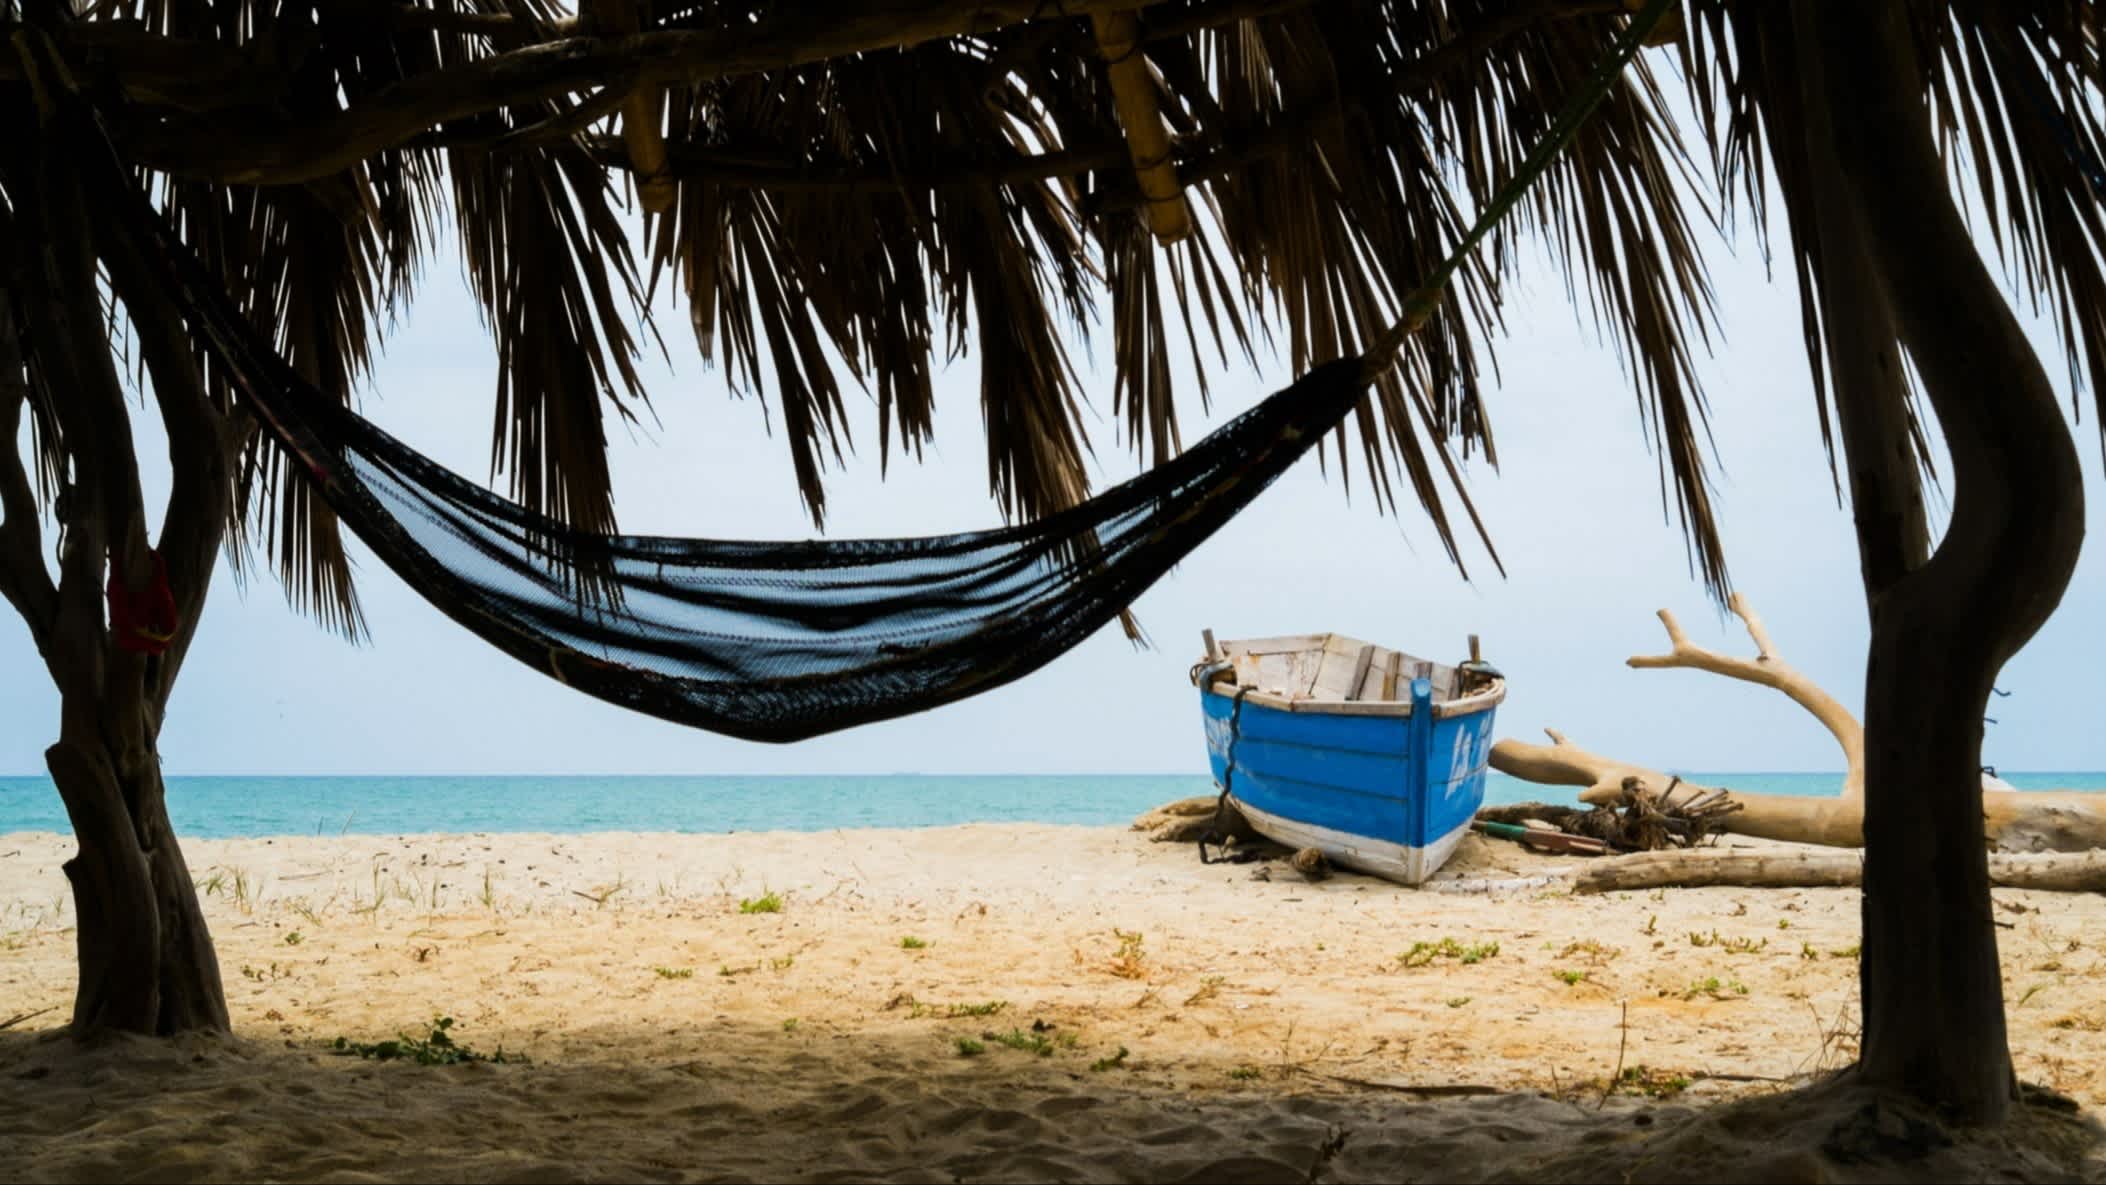 Der Strand Zorritos in Tumbes, Peru mit einer Hängematte aufgespannt zwischen zwei Palmen und einem traditionellen blauen Boot sowie einem Baumstamm und Blick aufs Meer. 